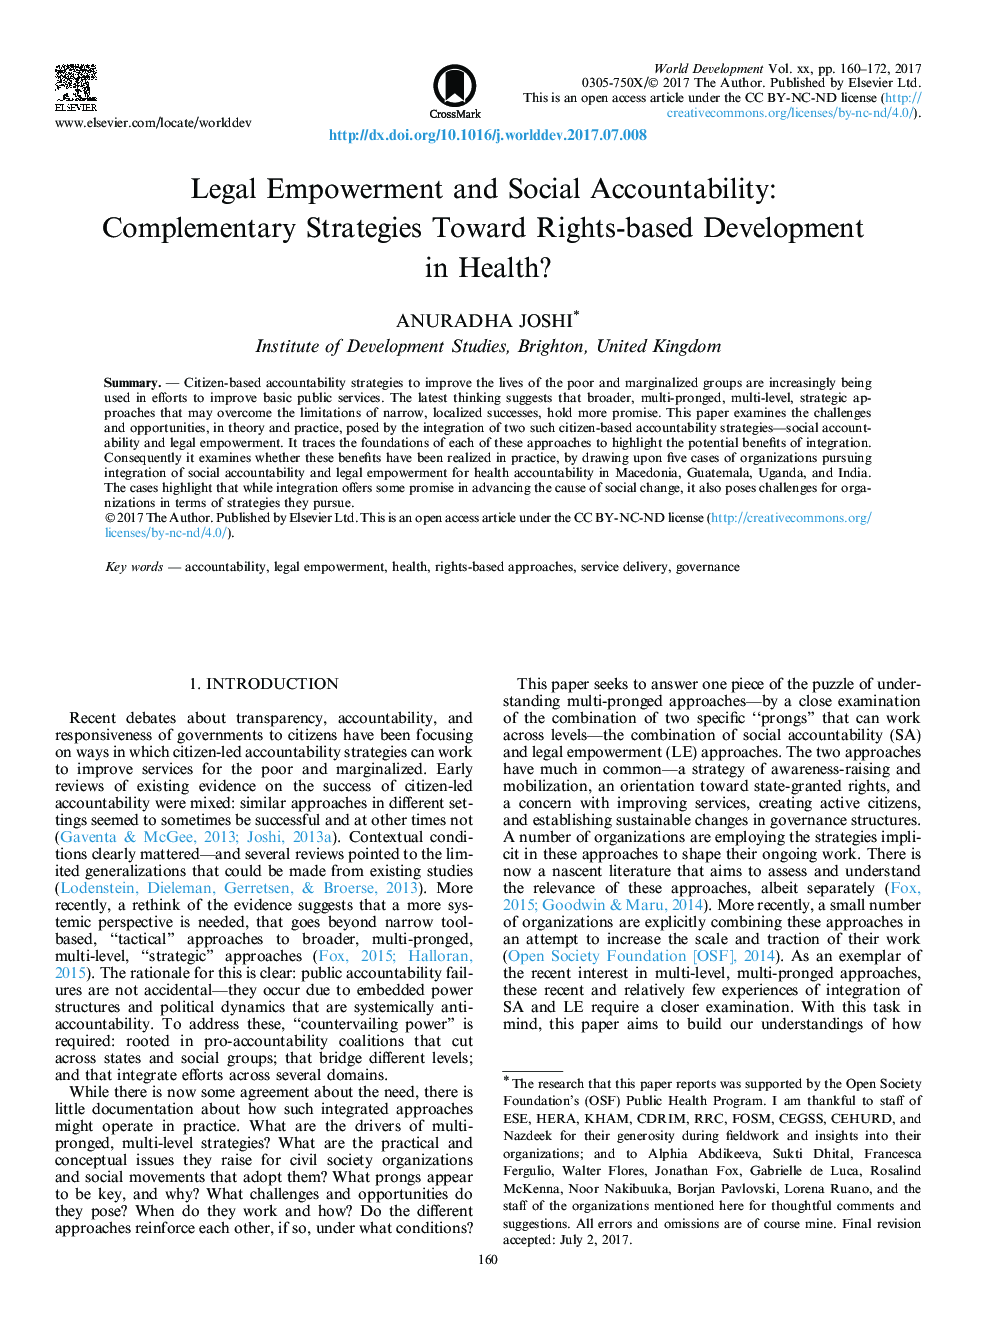 توانمندسازی قانونی و پاسخگویی اجتماعی: راهکارهای تکمیلی در راستای توسعه حقوق مبتنی بر حقوق در سلامت؟ 